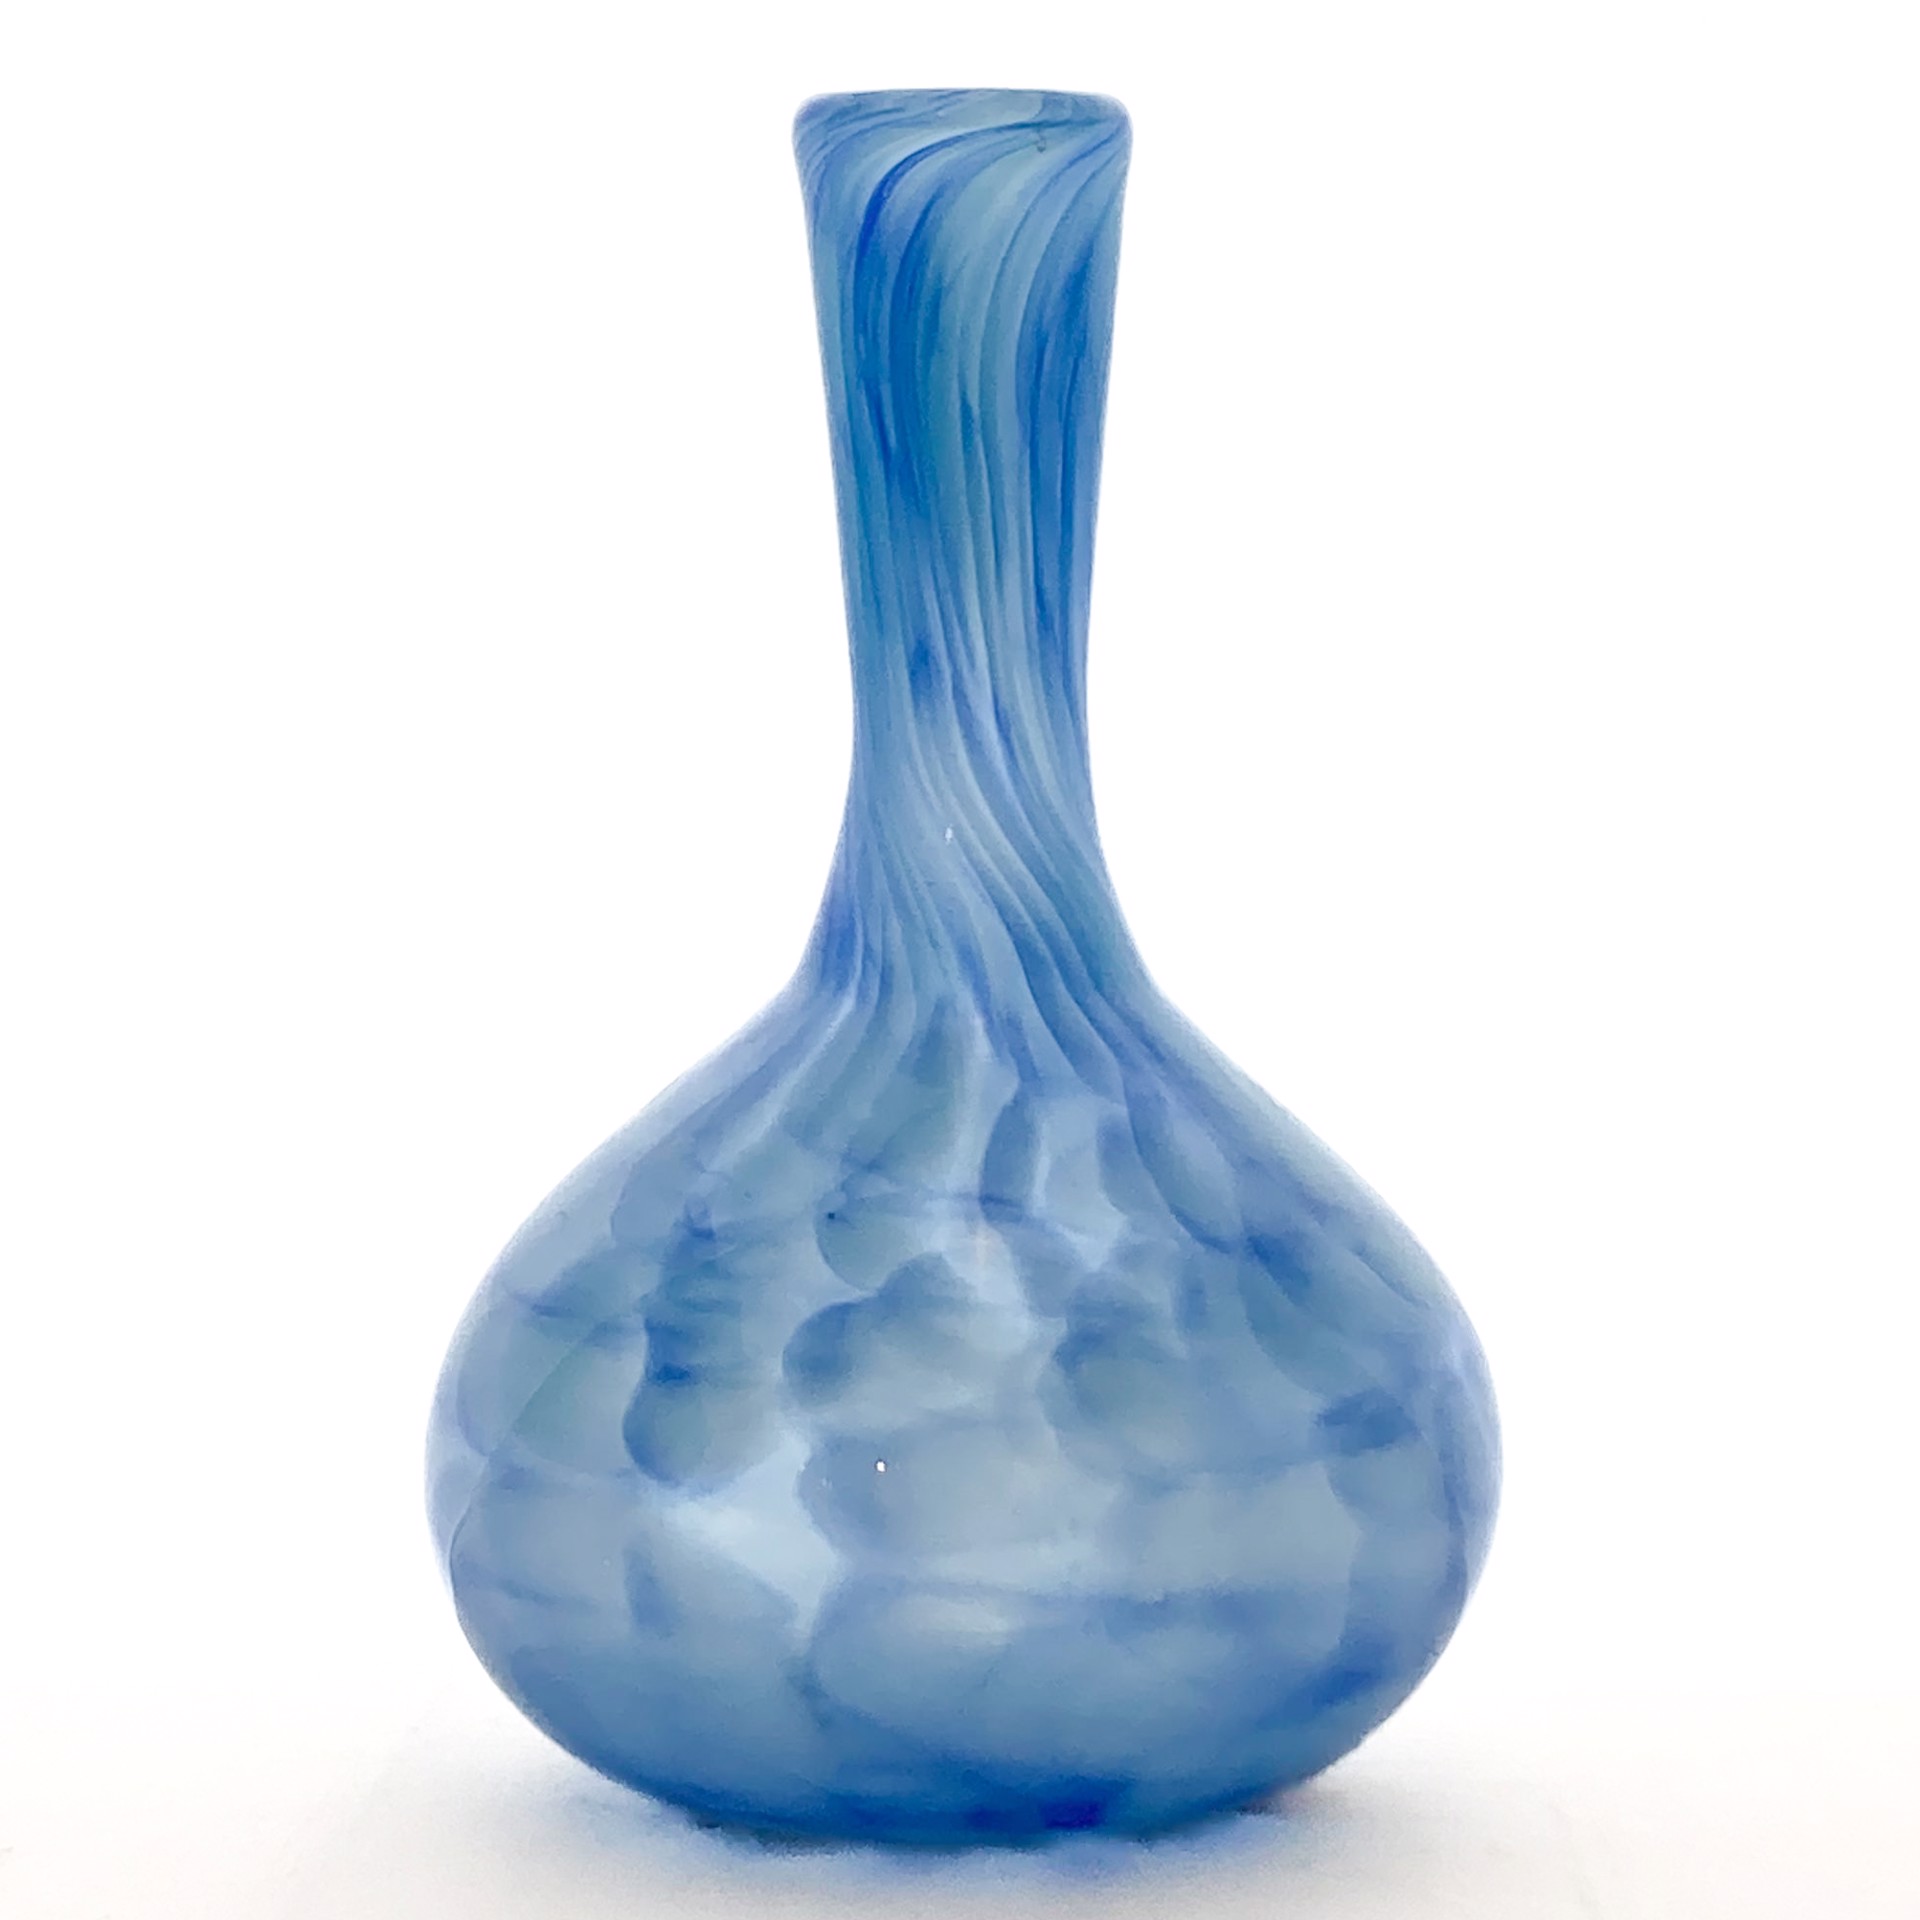 KACZL-V7($95) by Gumball Glassworks